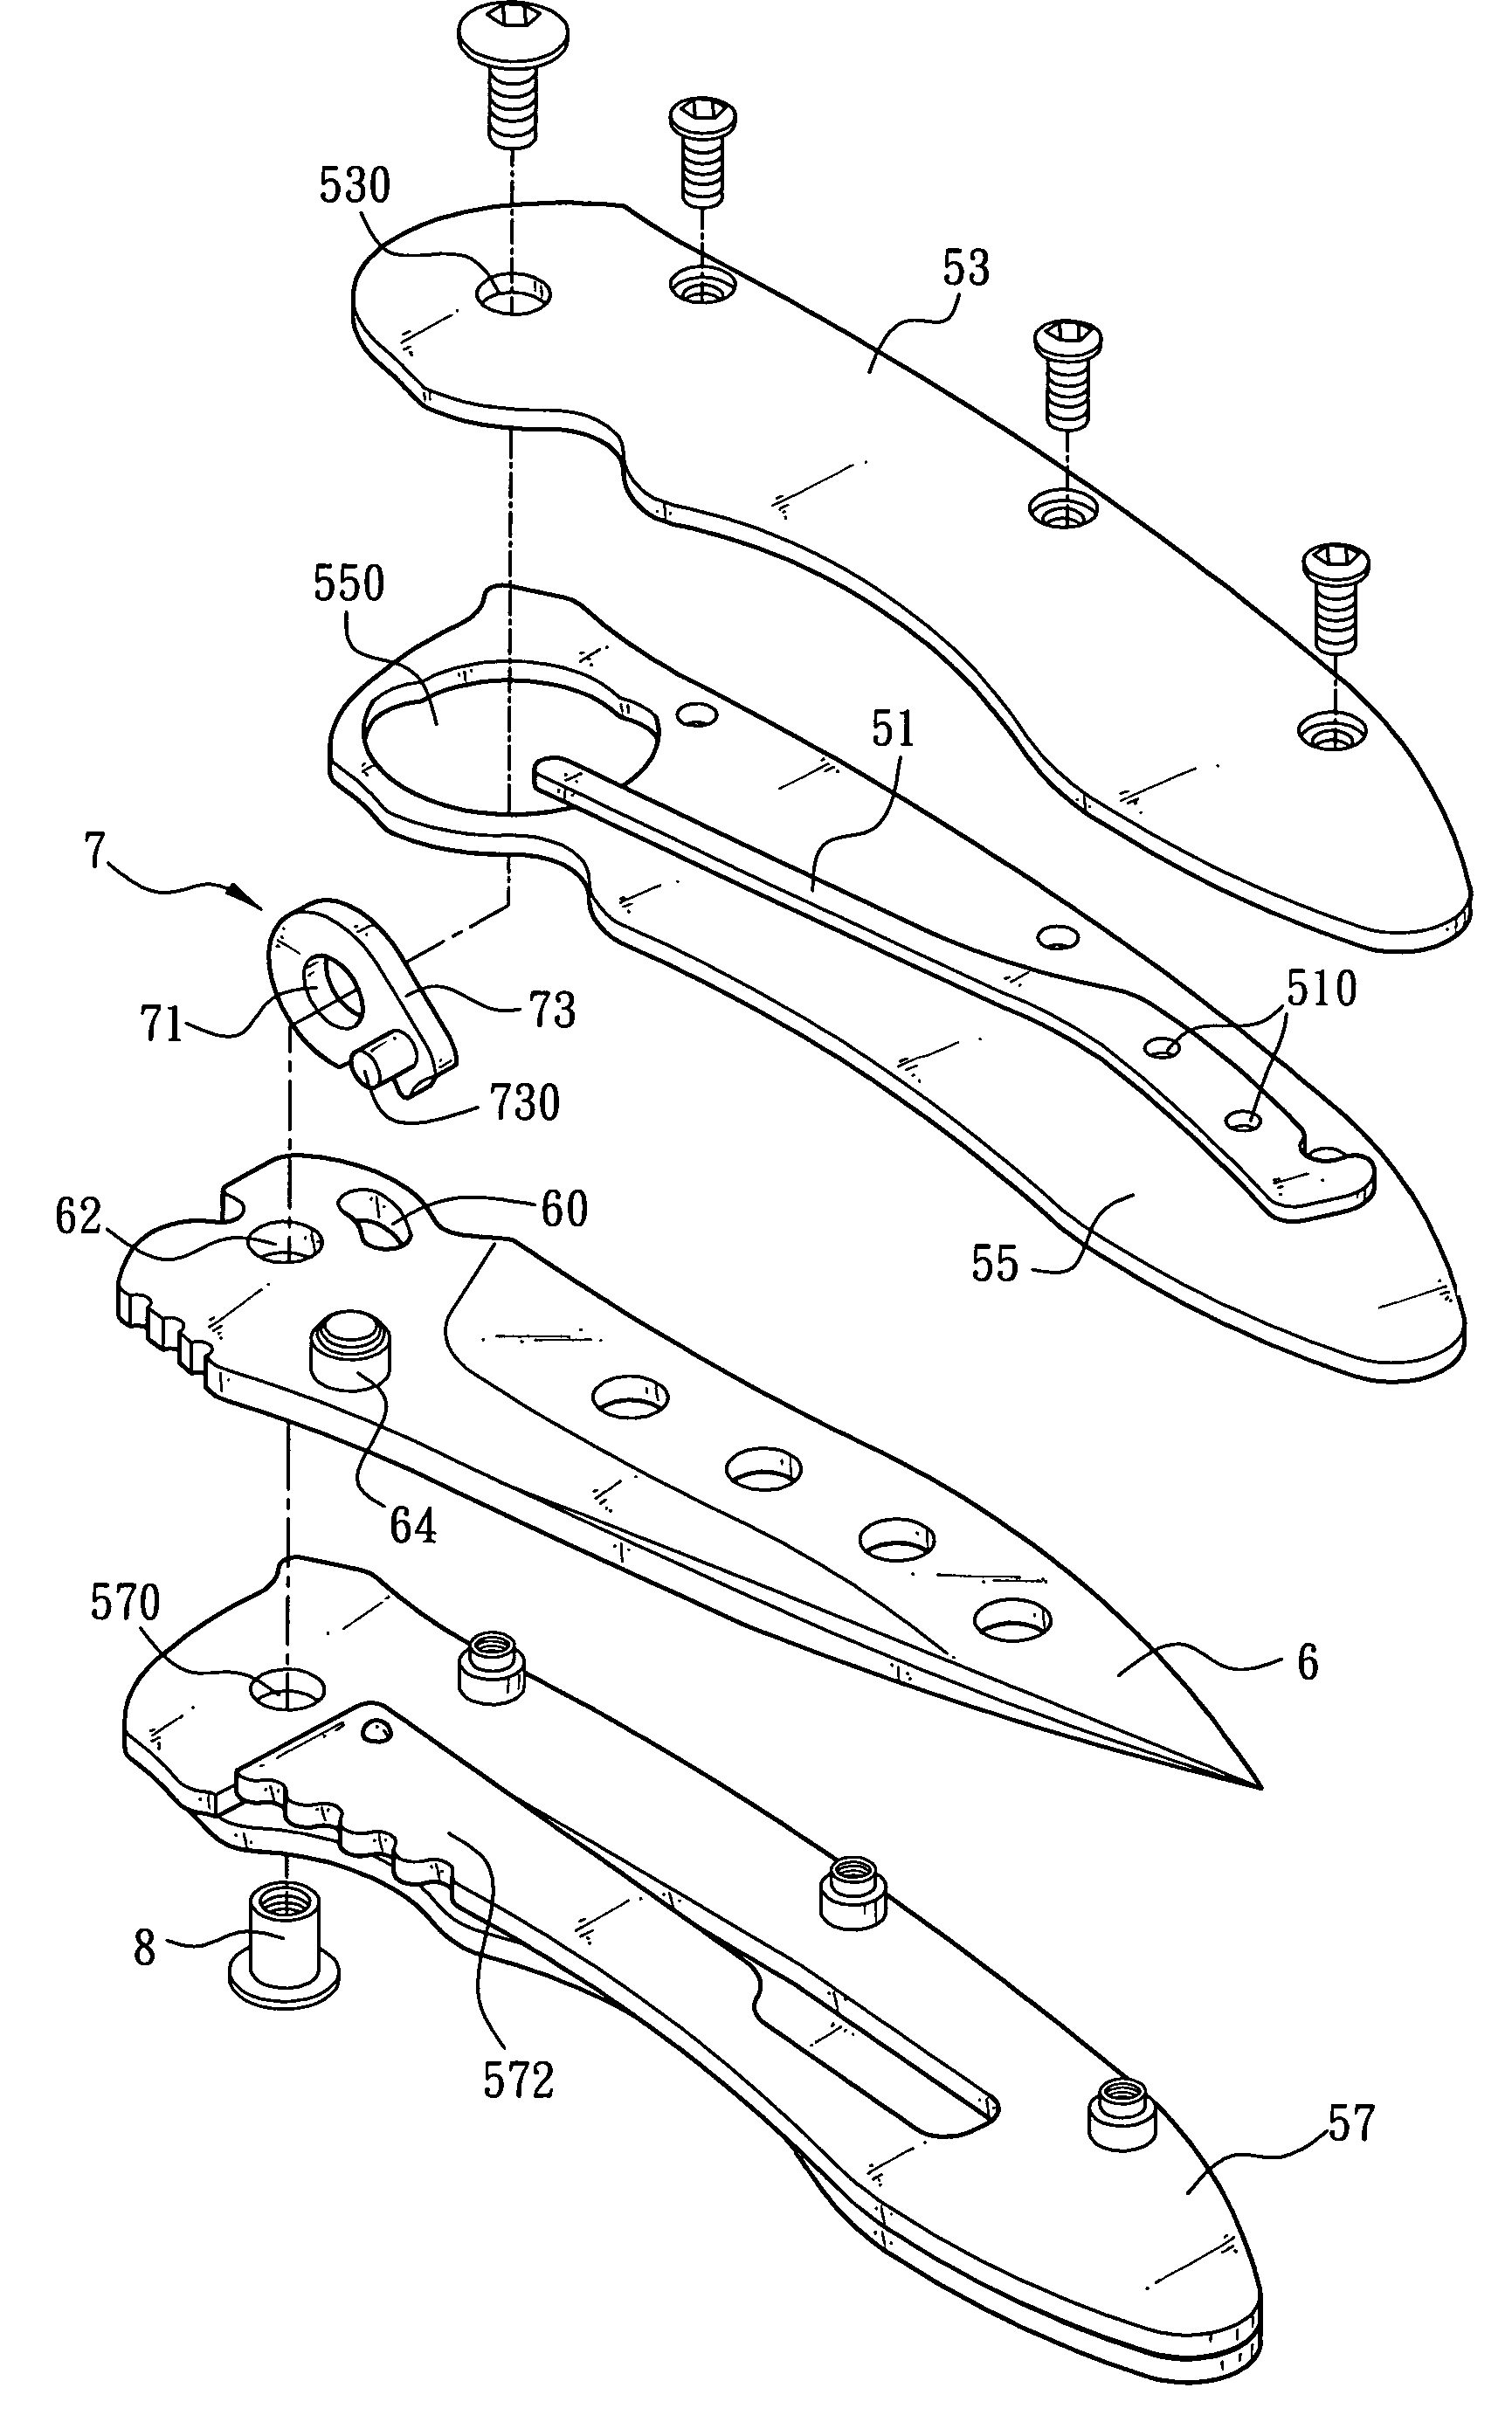 Folding knife assembly